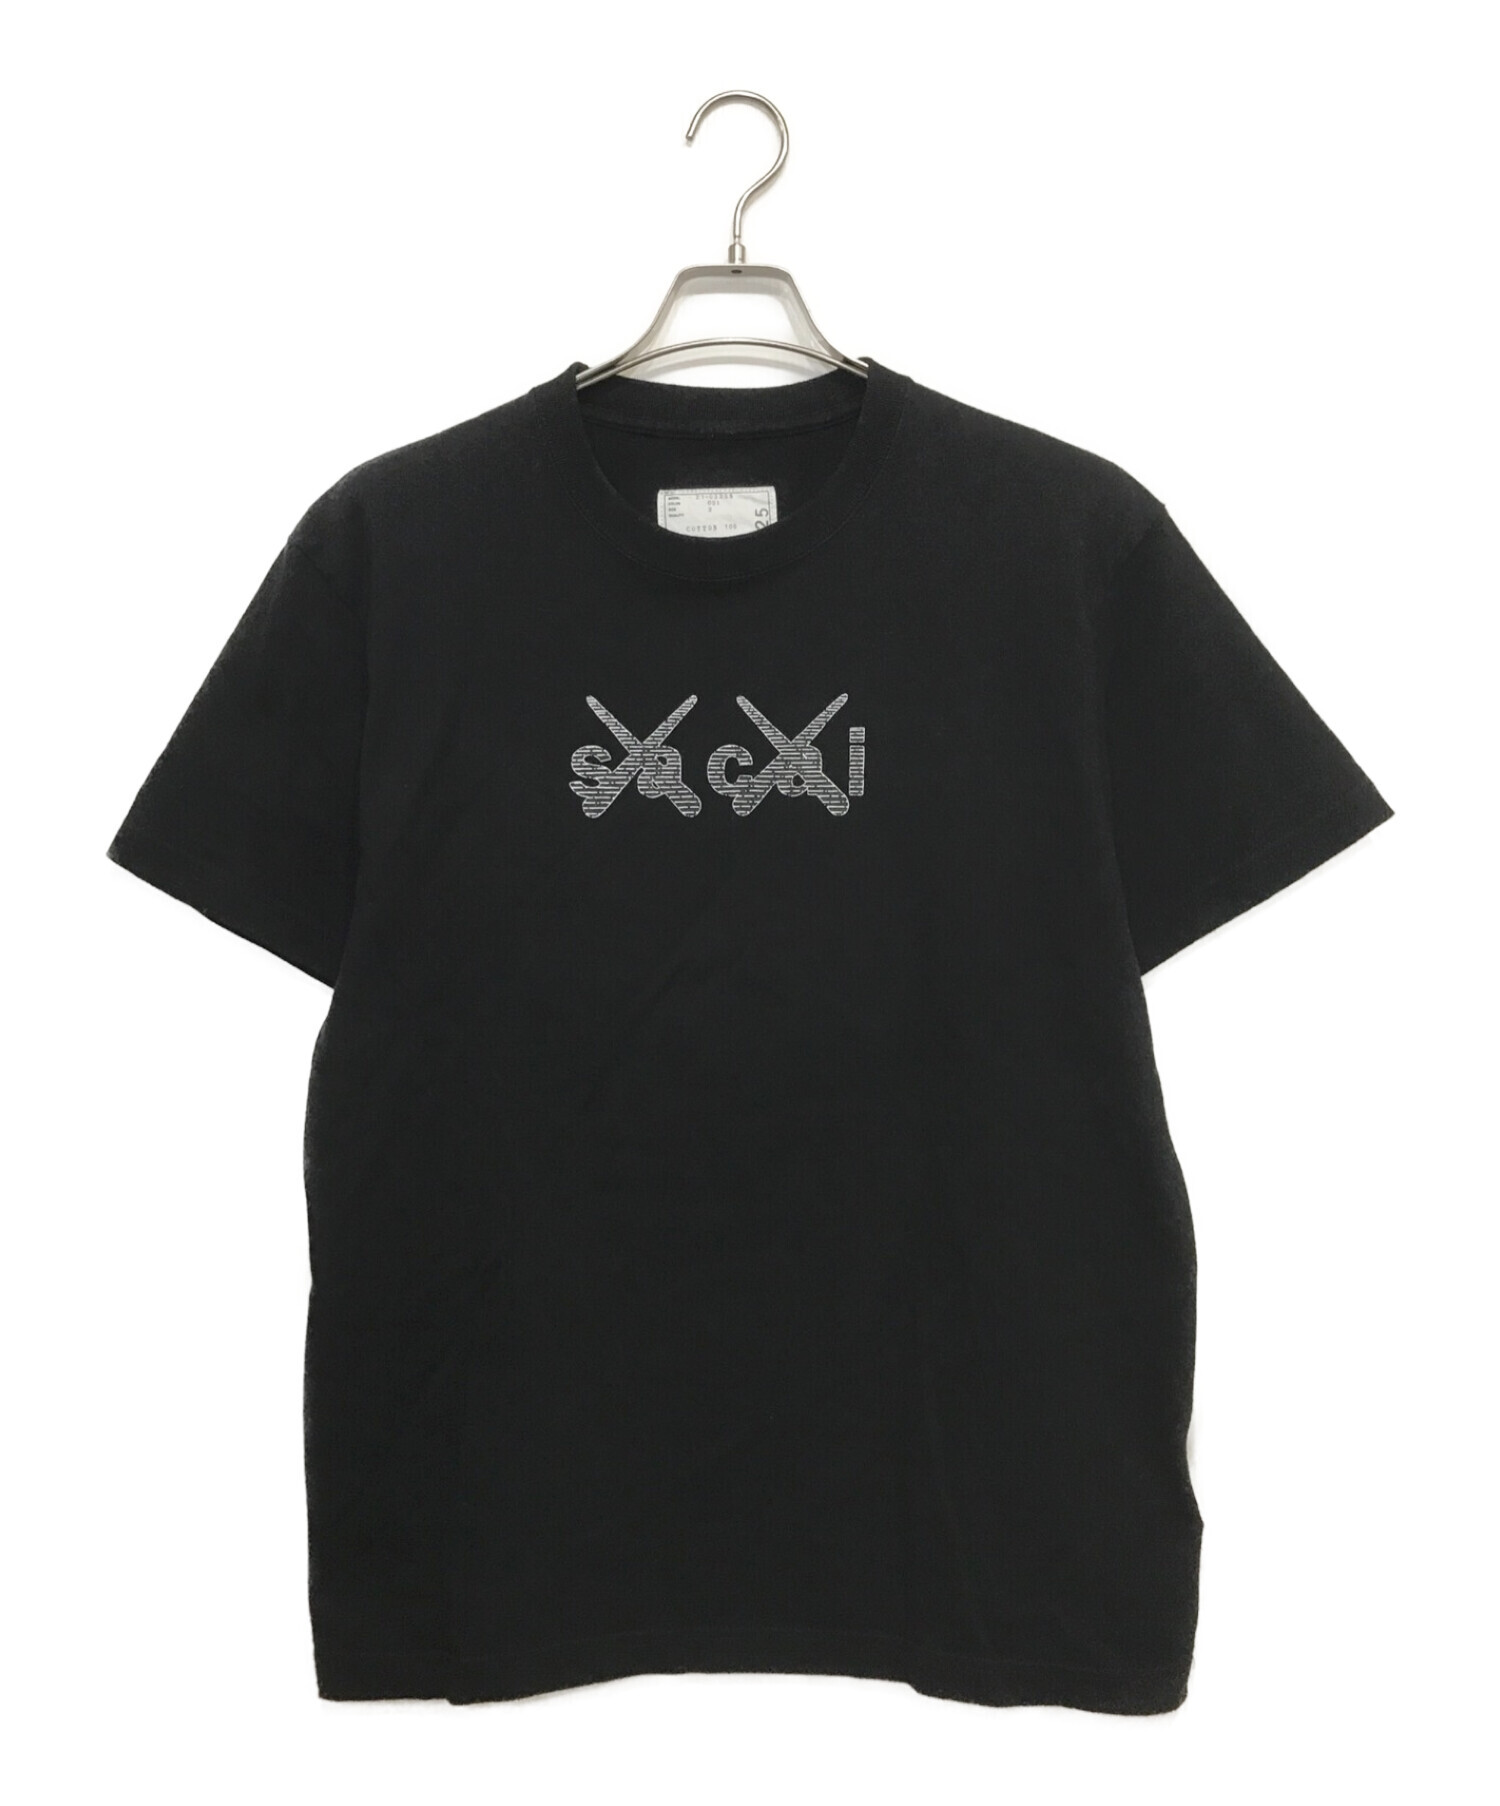 トップスsacai x KAWS Print Tシャツ ブラック サイズ2  新品